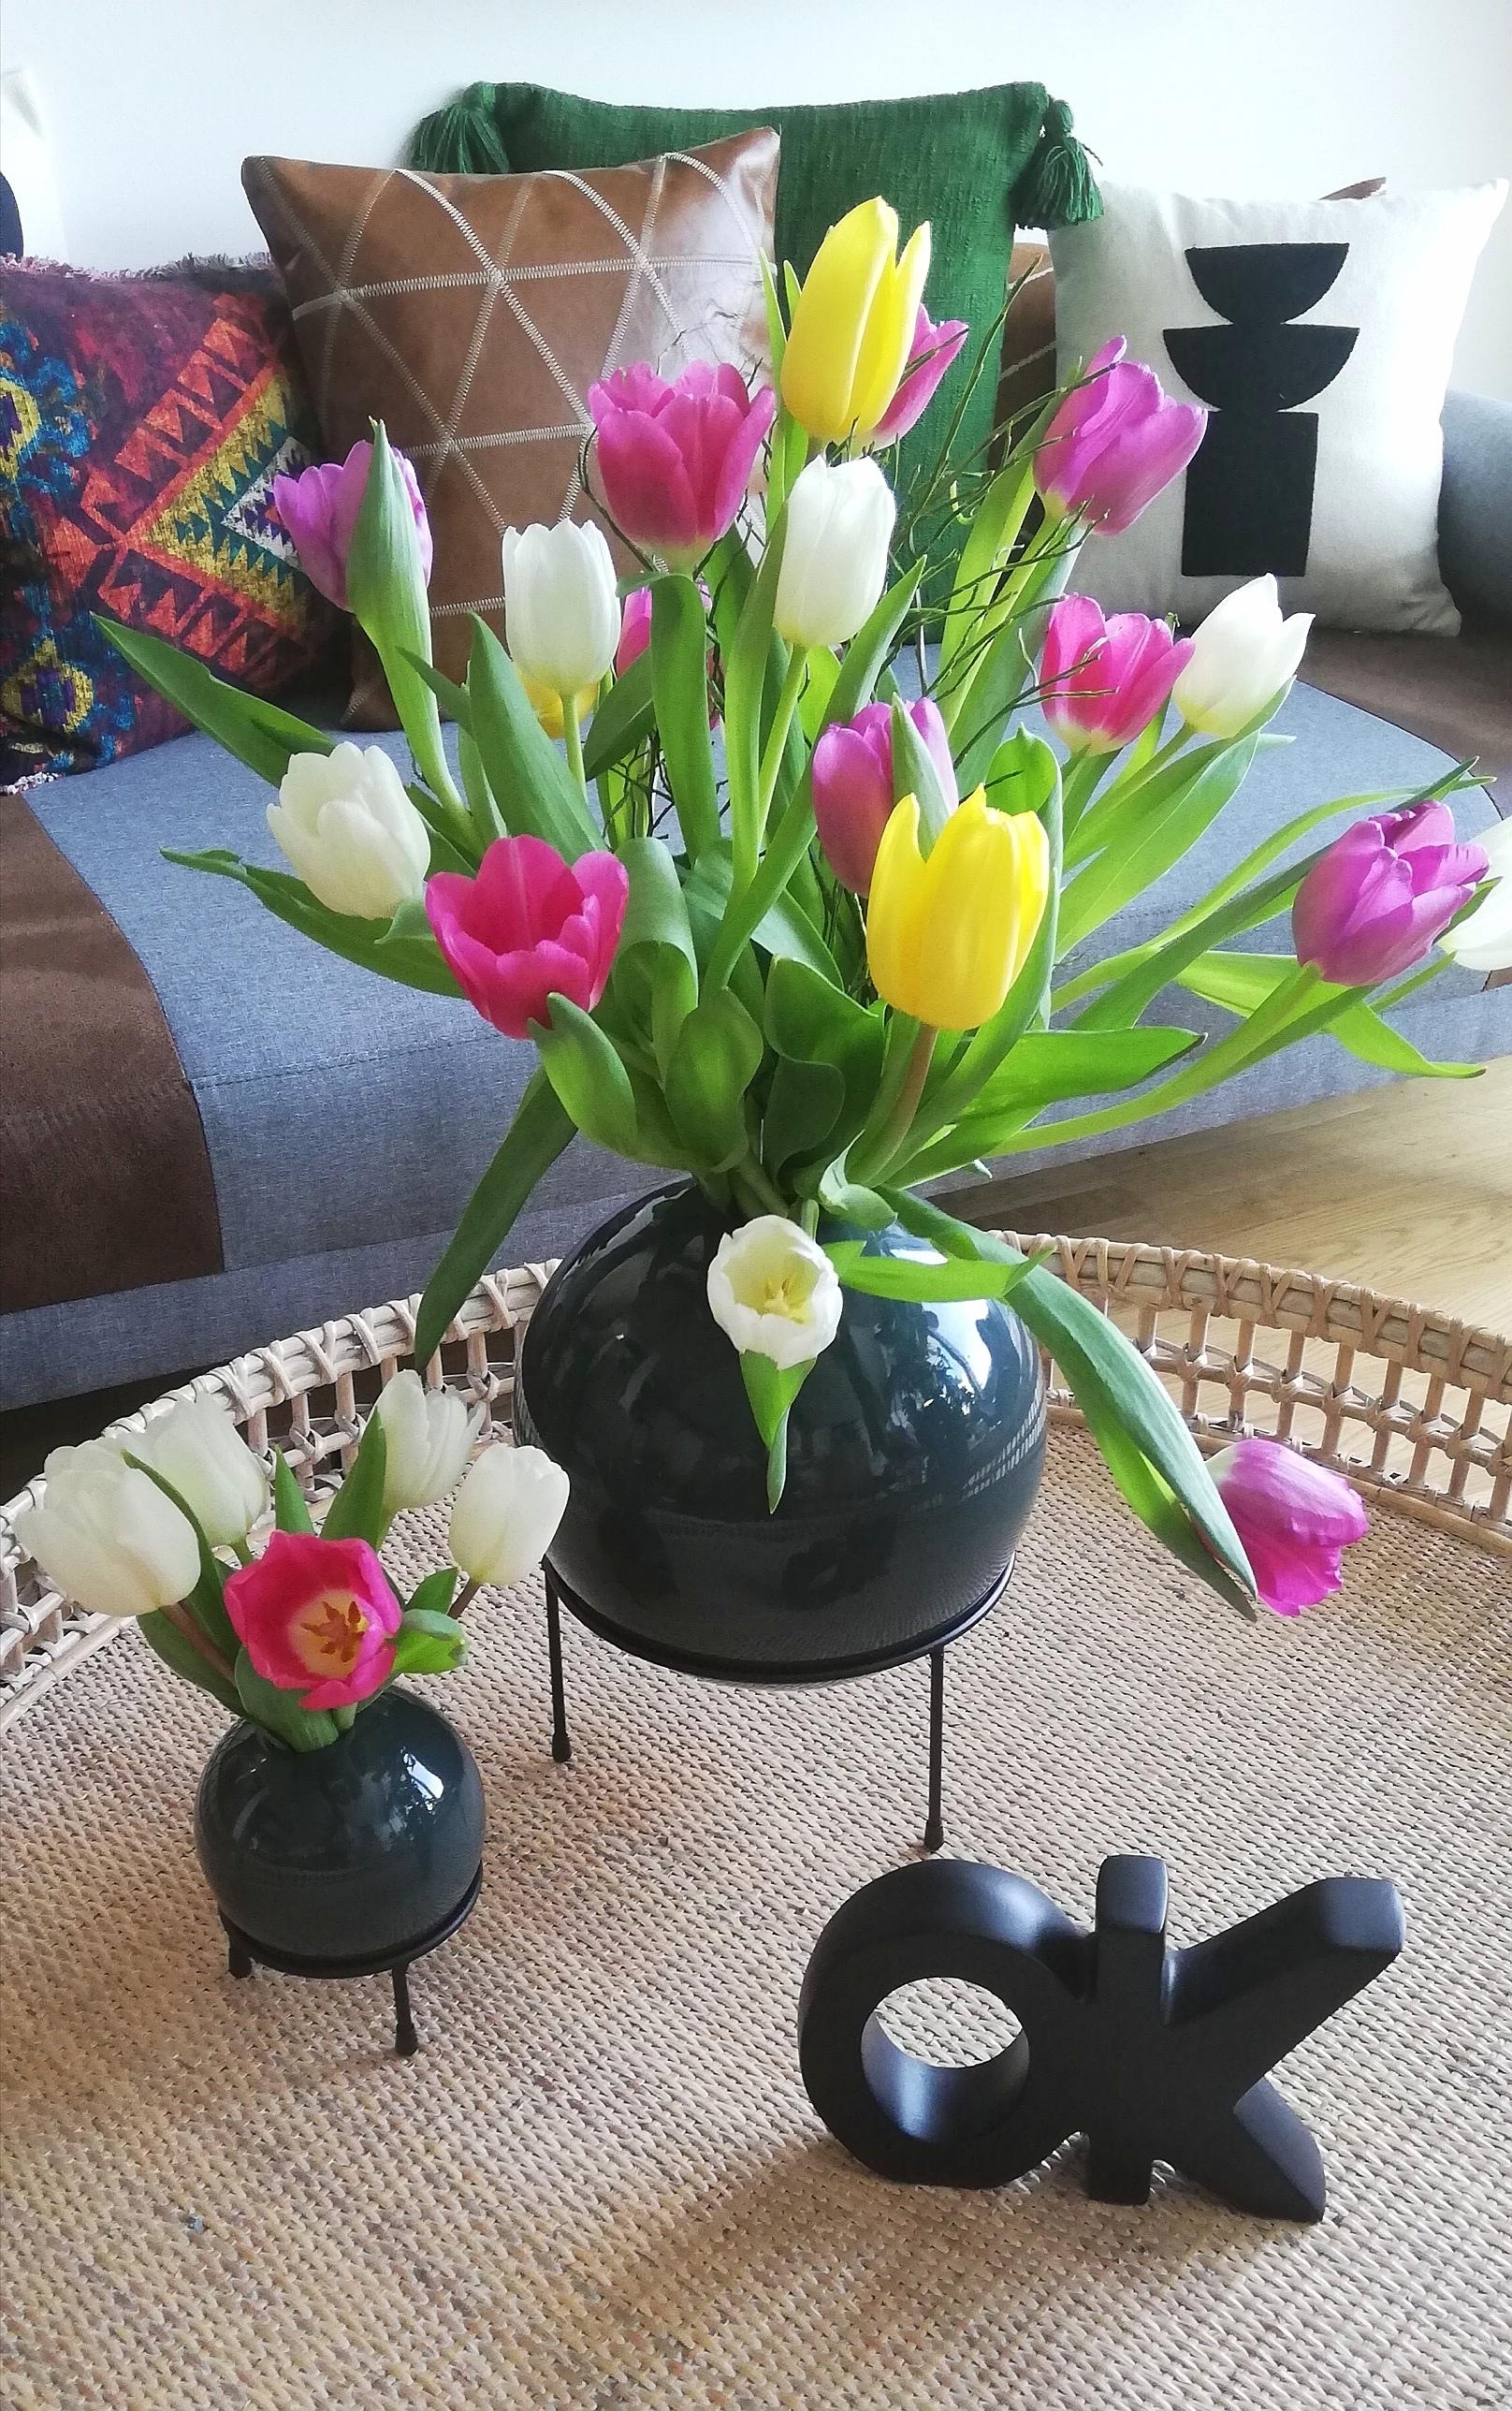 #tulpenliebe #tulpen #frischeblumen #living #home #flower #blumenzauber #decor #decoration #stayathome #love #cozyhome 